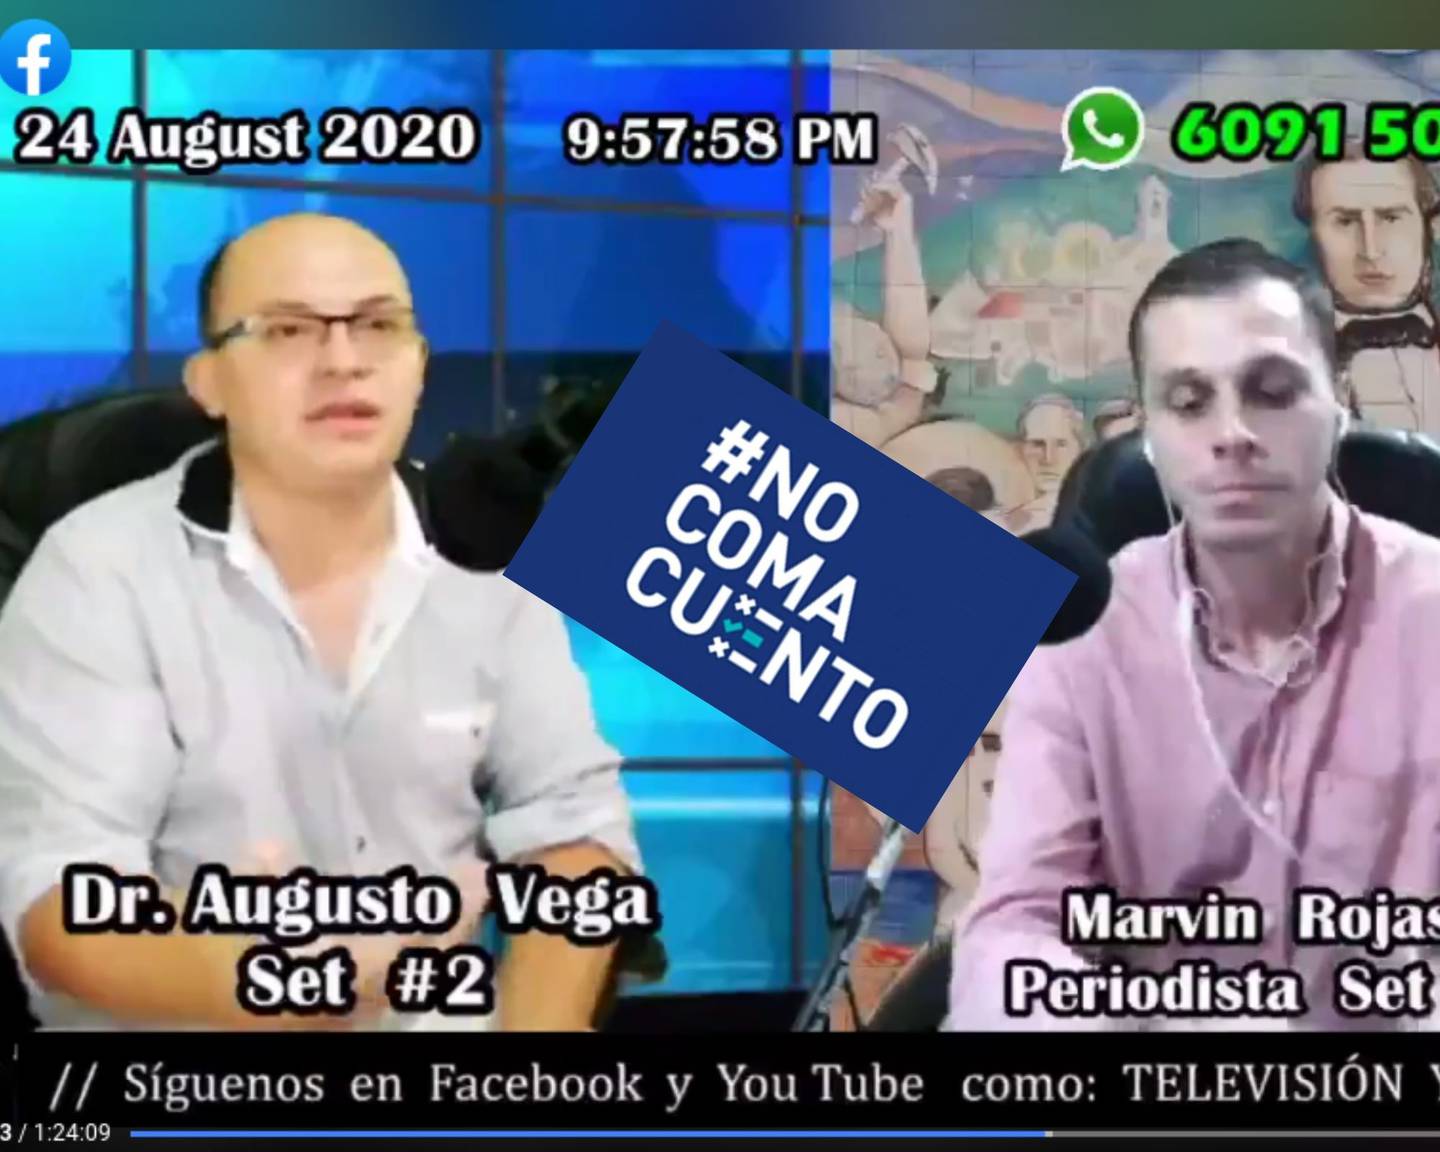 El médico Augusto Vega asistió el lunes 24 de agosto al programa La Hora de Juanito Mora, conducido por el periodista Marvin Rojas.